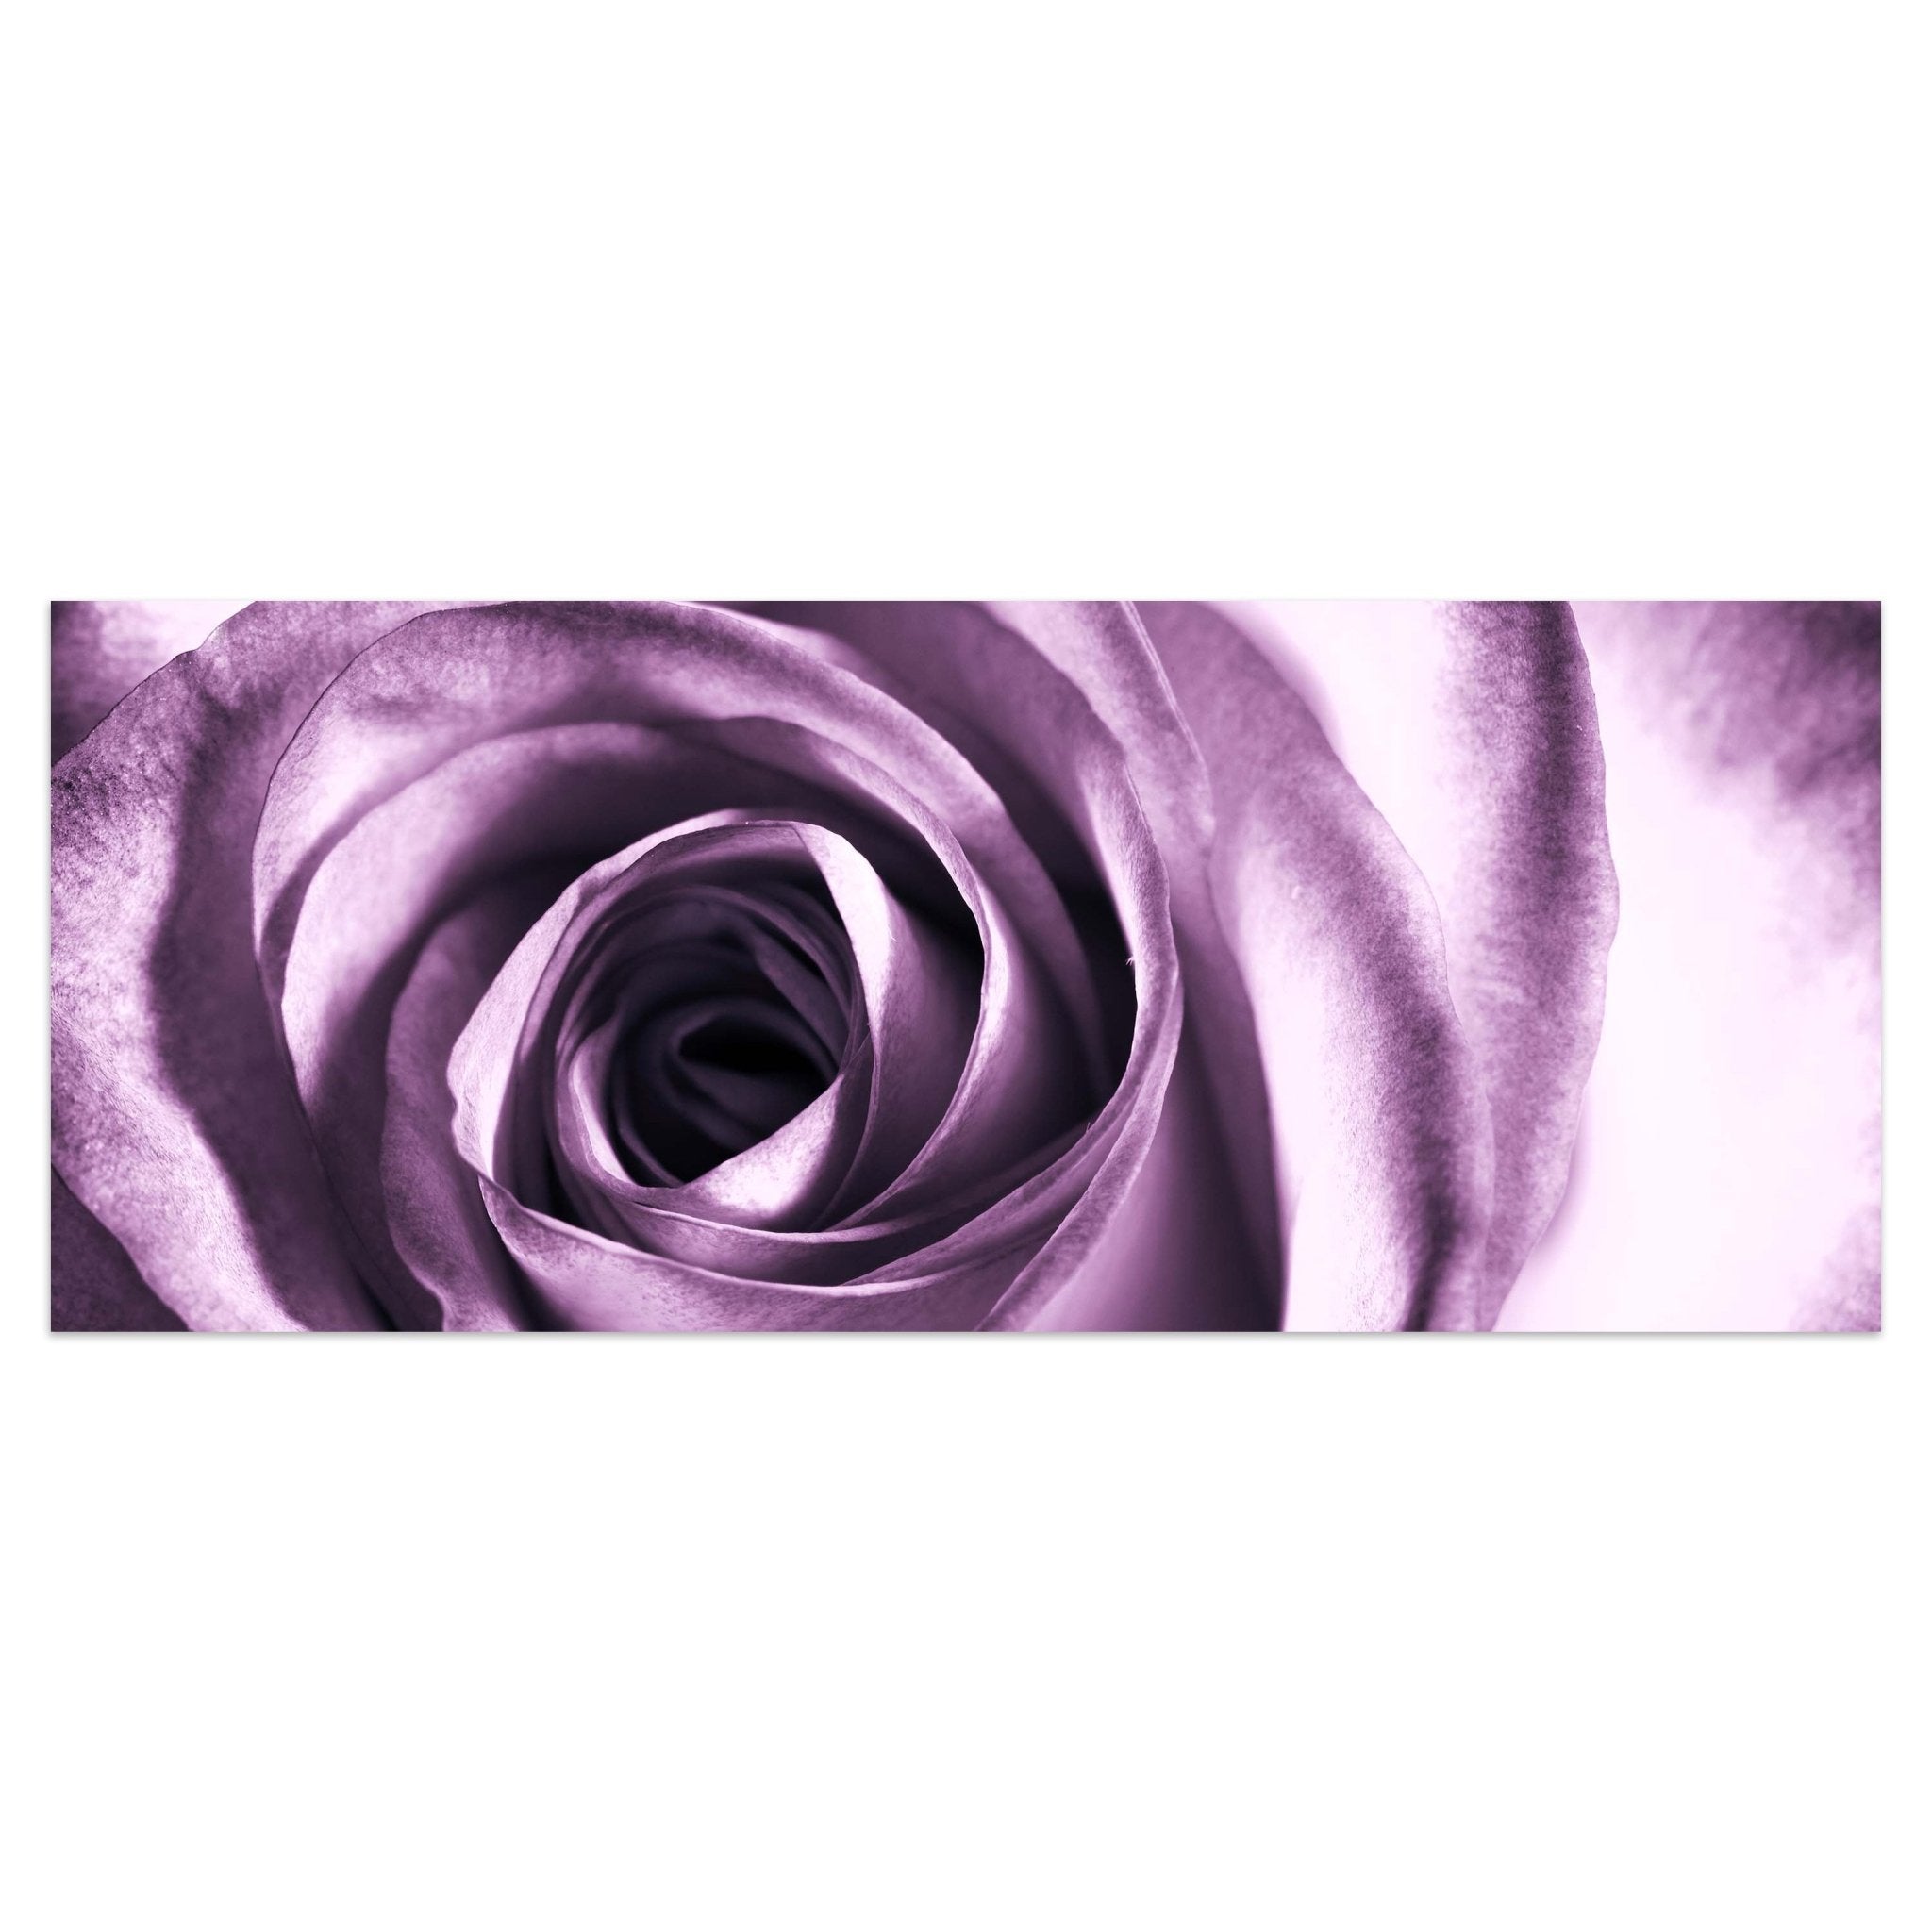 Leinwandbild violette Rose M0051 kaufen - Bild 1